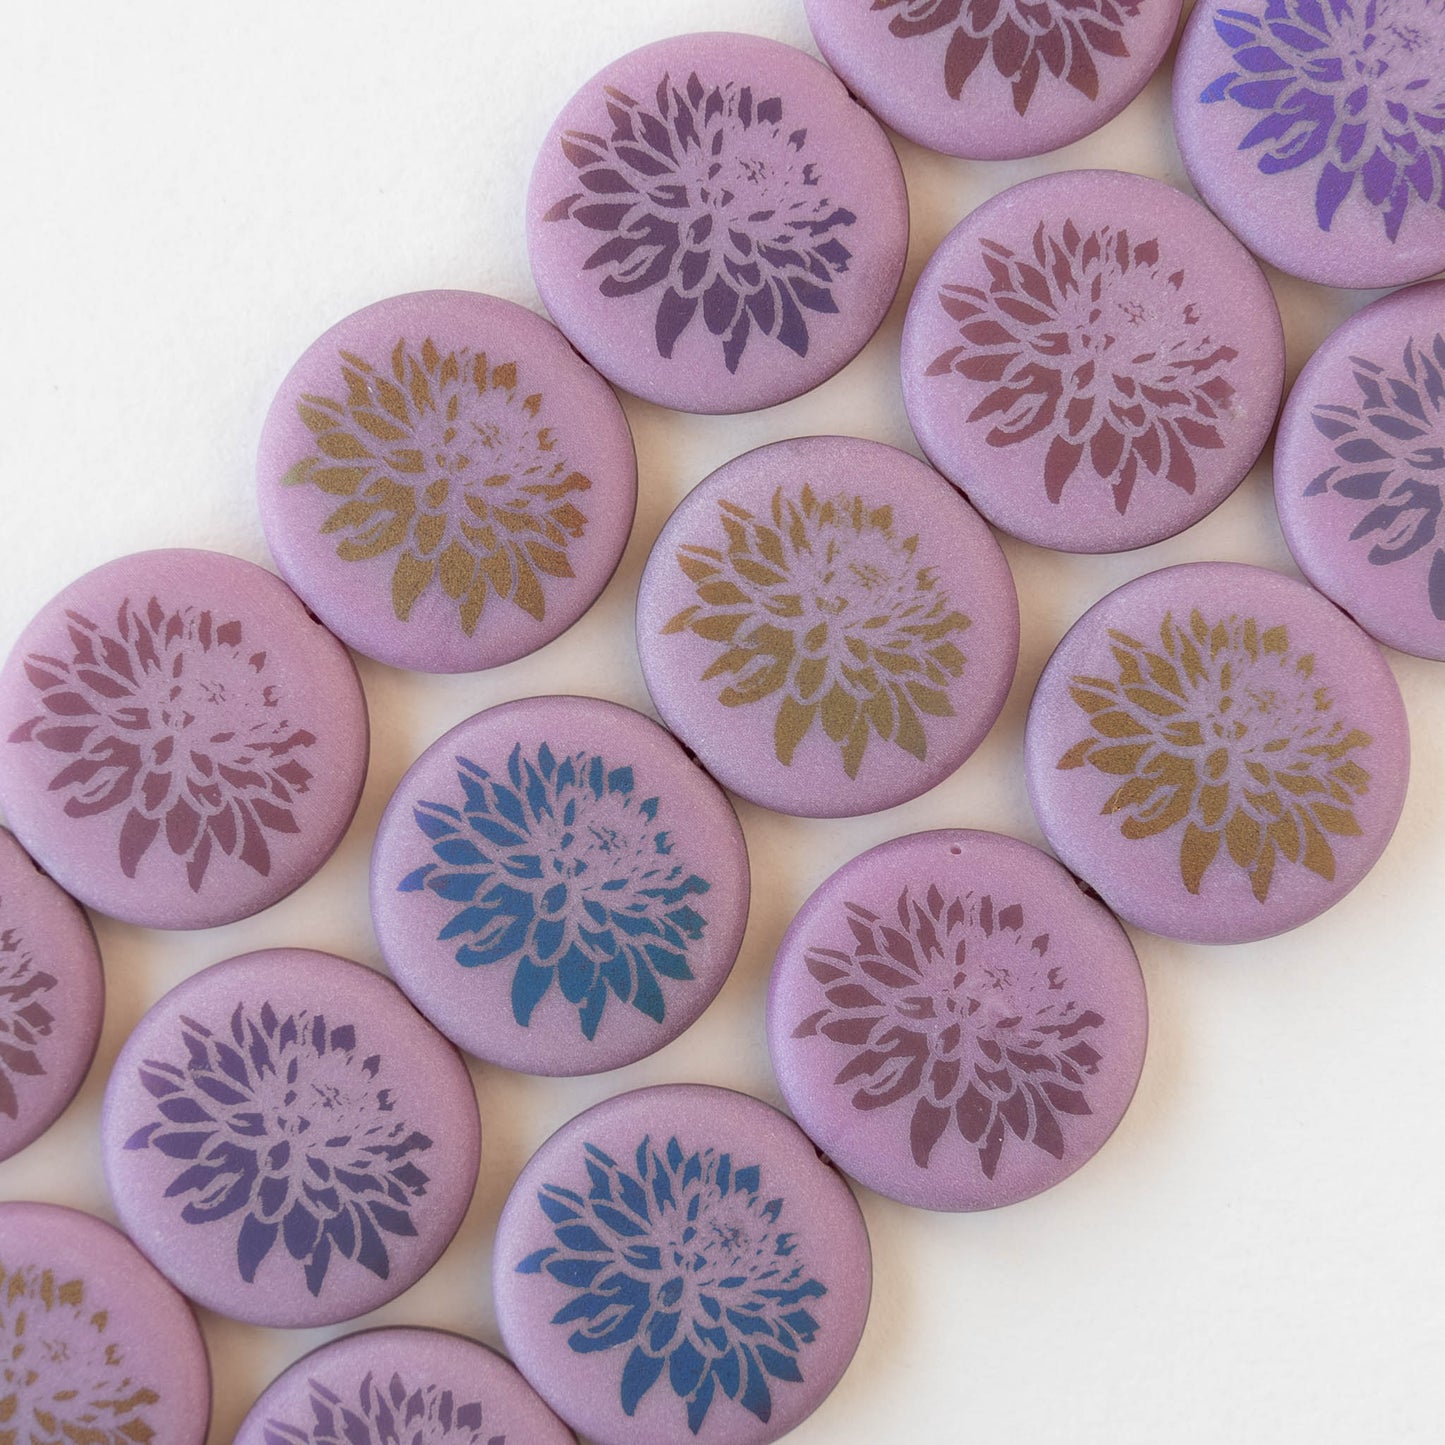 16mm Glass Coin Beads - Zinnea Flower Pink - 8 beads